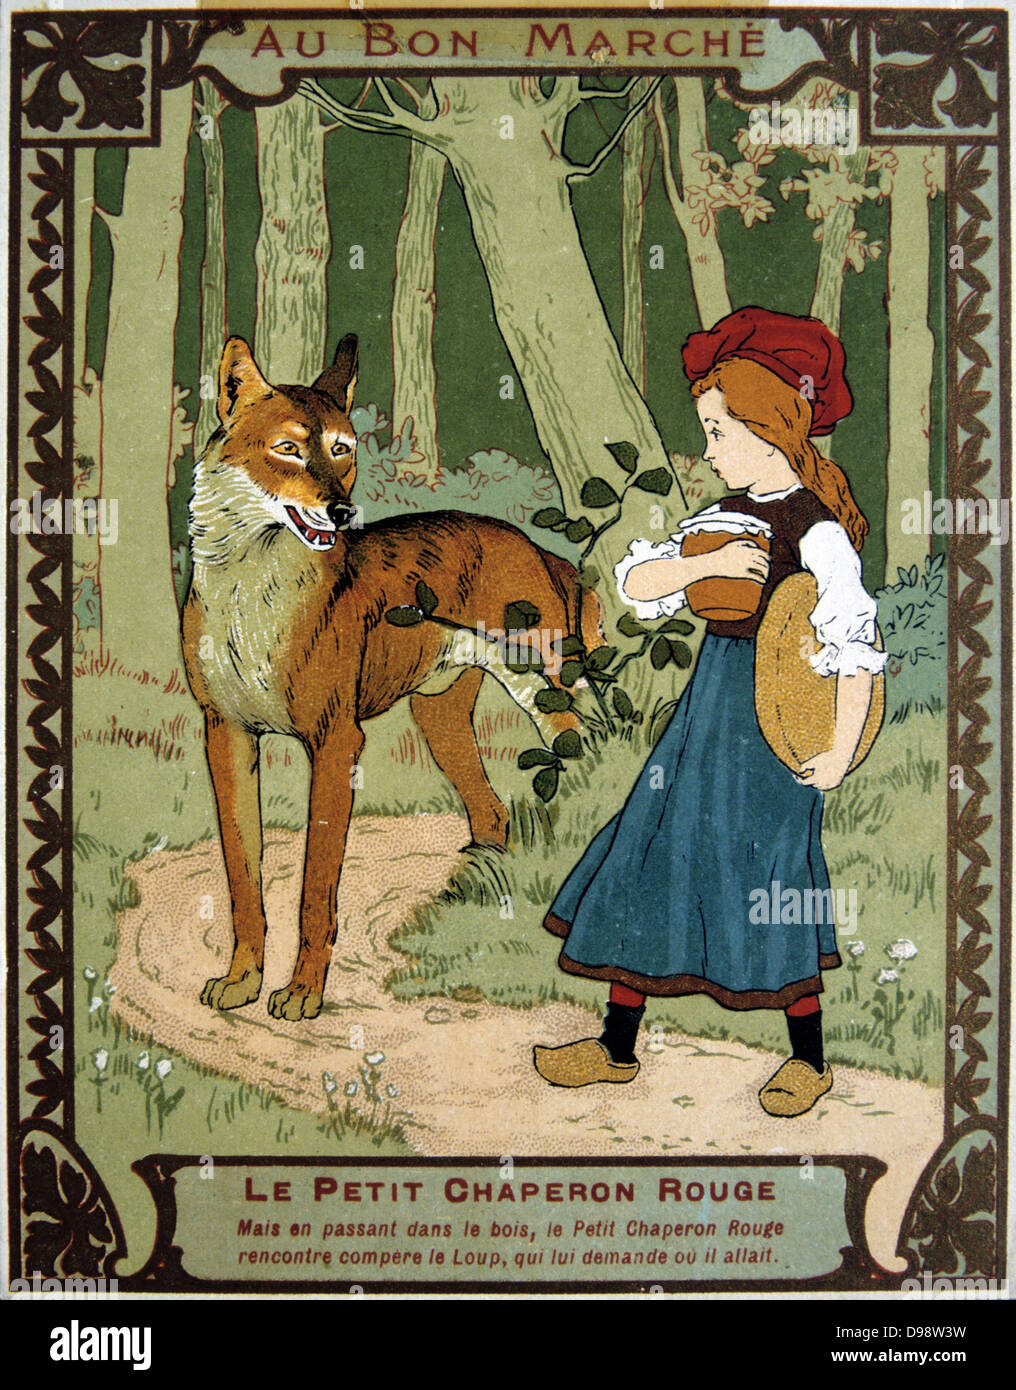 Le Petit Chaperon Rouge, sur sa façon de voir sa grand-mère, rencontre le loup dans les bois. Le commerce français c1900 Carte illustrant le conte de l'auteur français Charles Perrault (1628-1703). Chromolithographie juvénile Littérature Banque D'Images